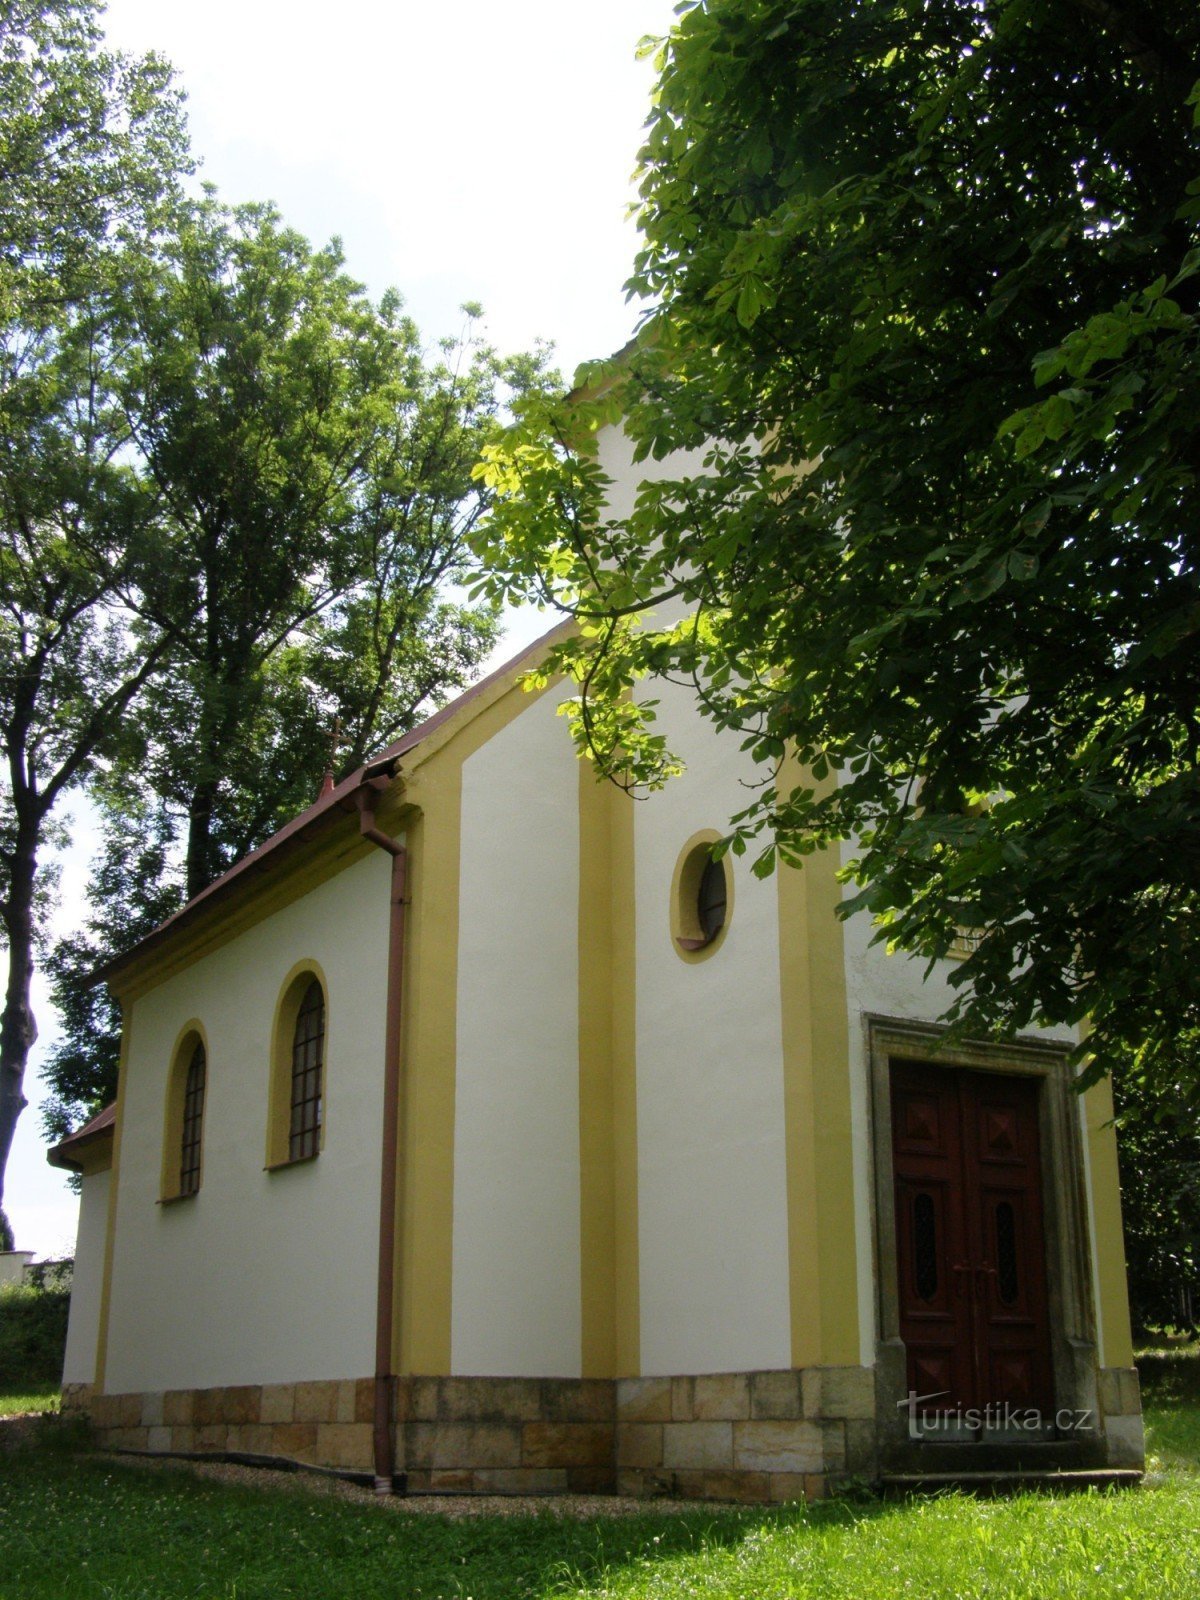 Trtěnice - capilla de St. Ana